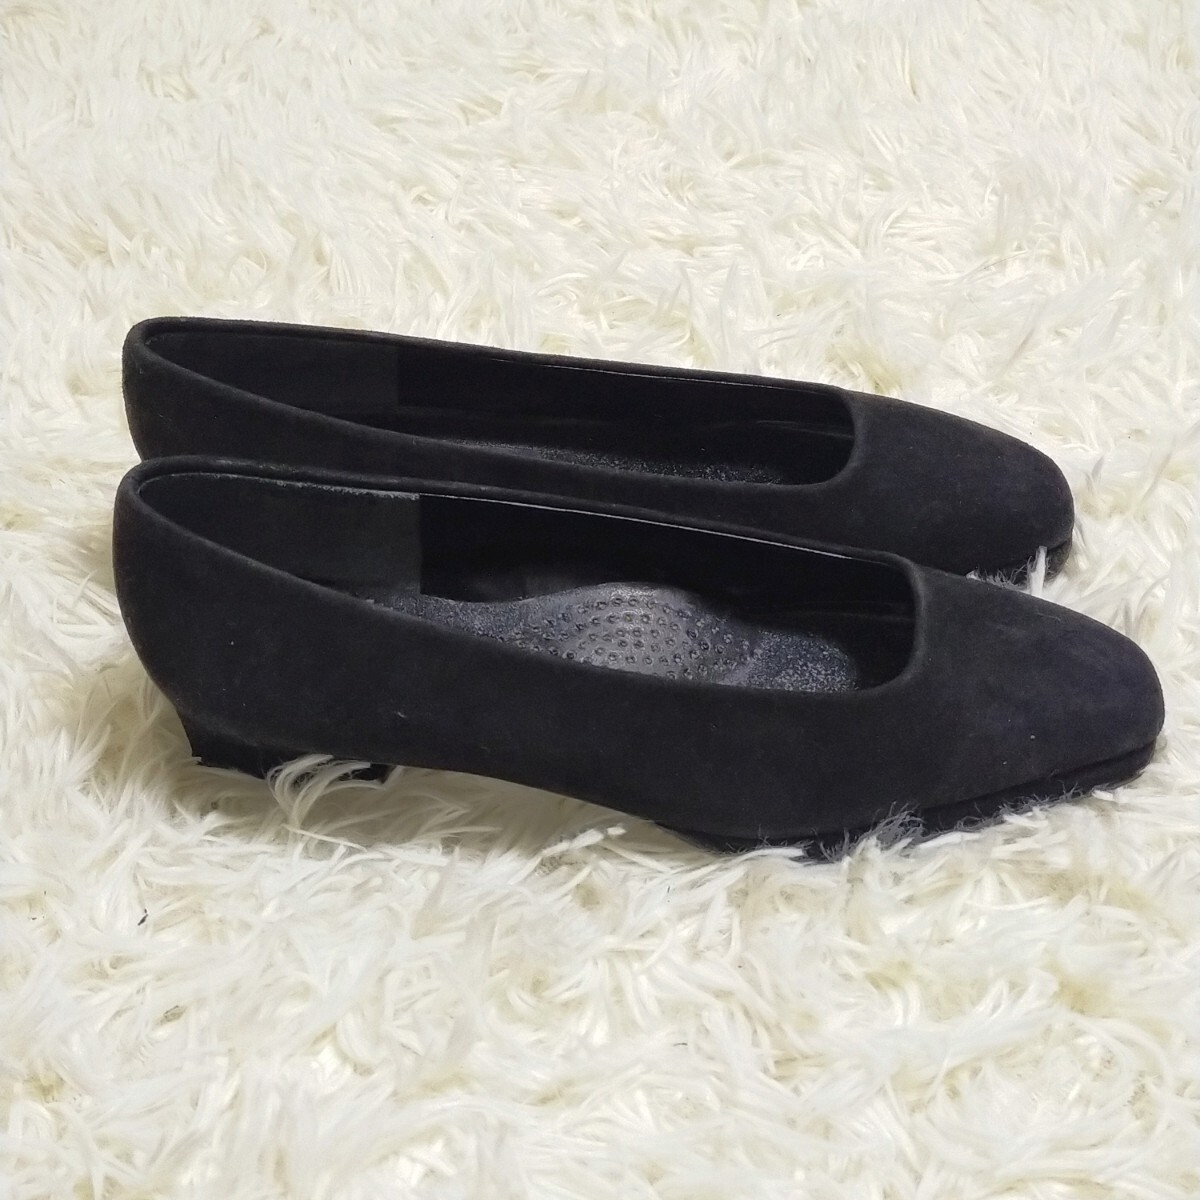 ヨシエイナバ yoshie inaba 美品 パンプス 靴 スウェード生地 ブラック 黒色 22.5 レディース_画像8